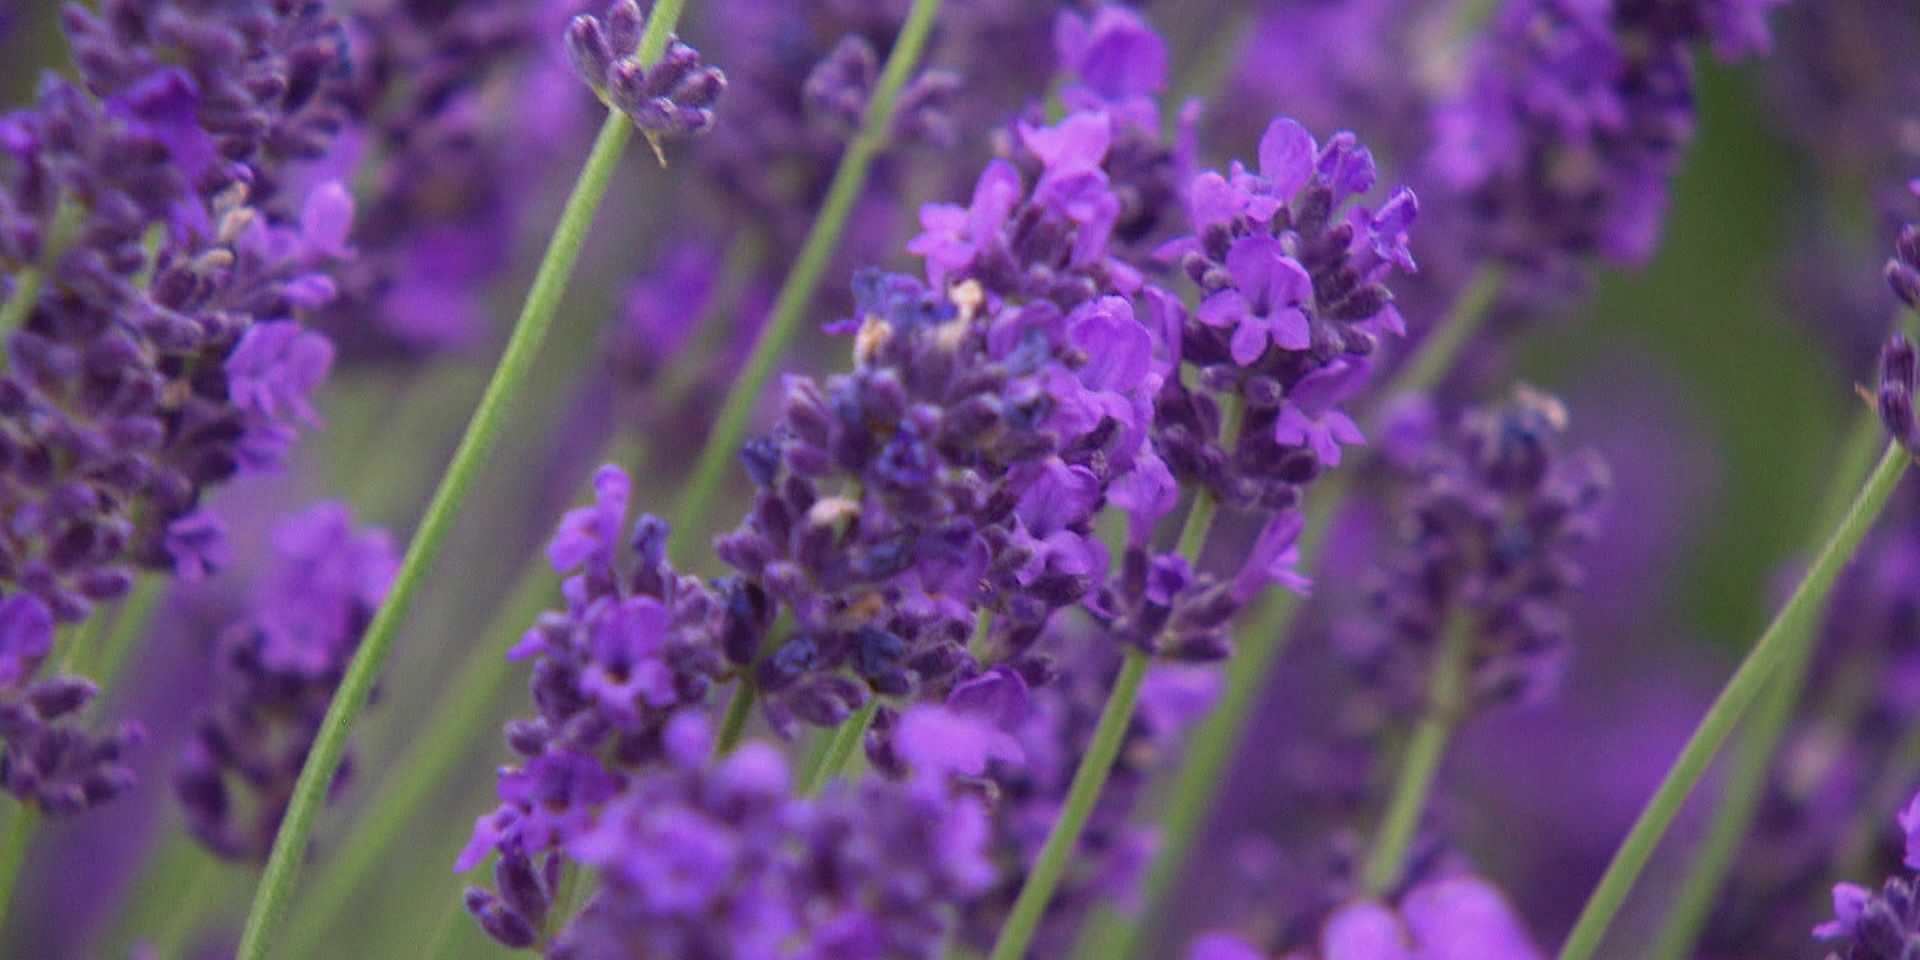 "bewusst gesund" am 28.11.2020: Lavendel – die „Arzneipflanze des Jahres“ 